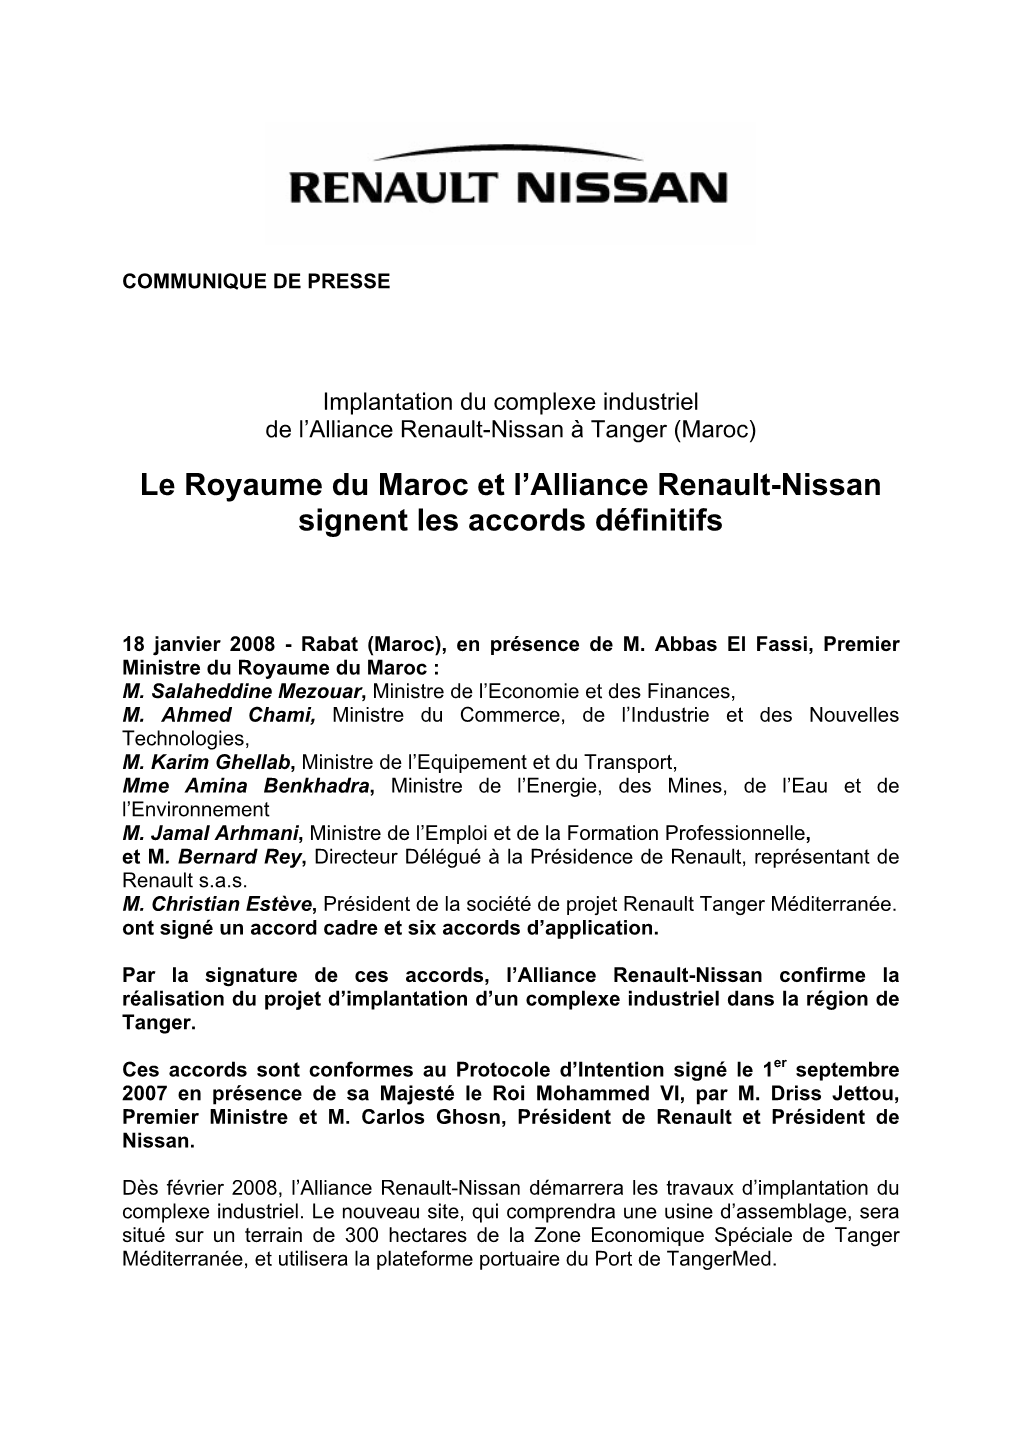 Le Royaume Du Maroc Et L'alliance Renault-Nissan Signent Les Accords